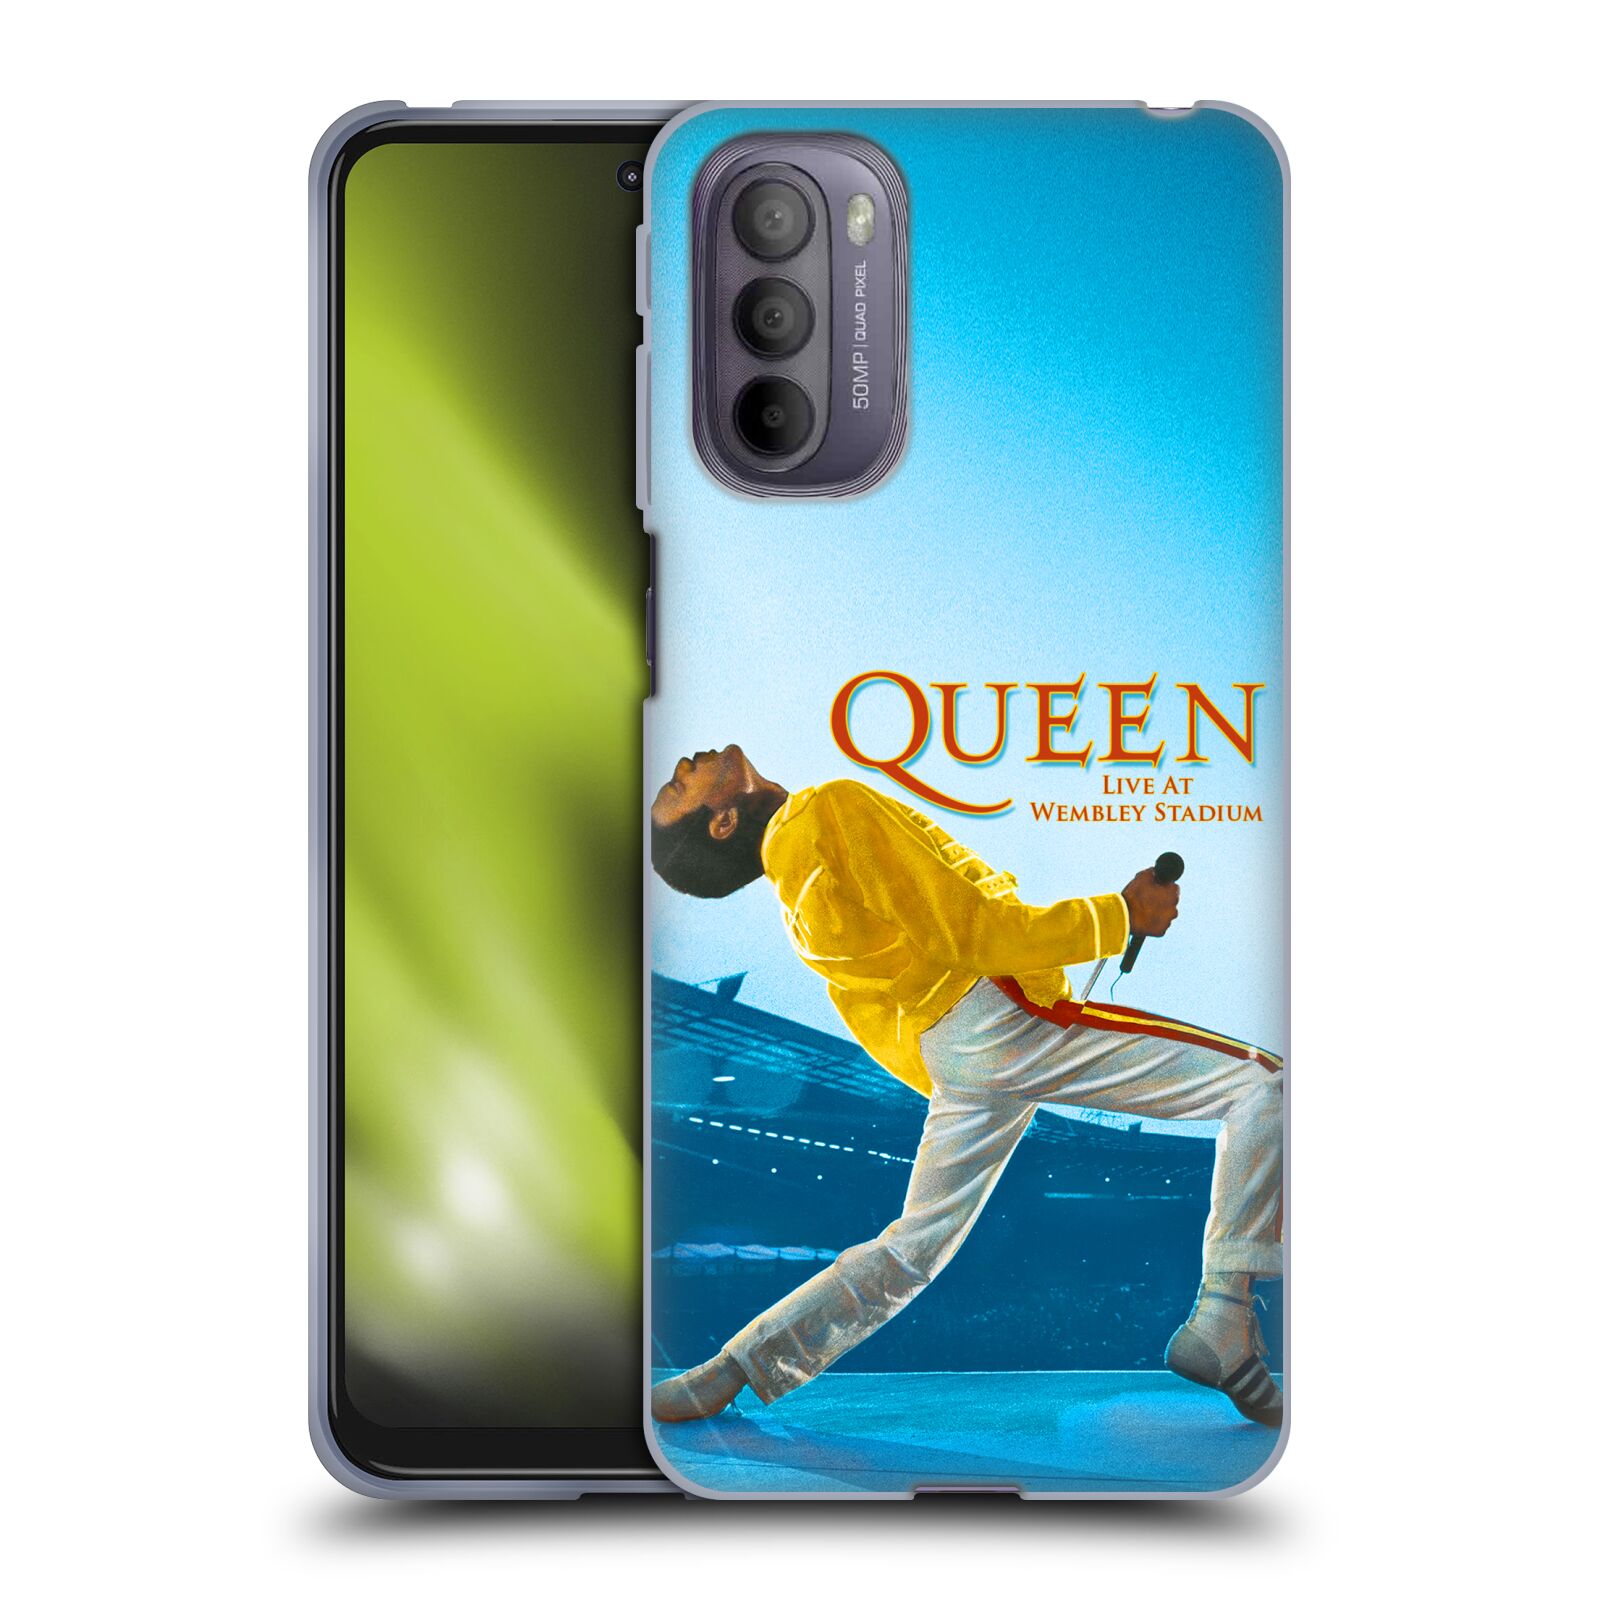 Silikonové pouzdro na mobil Motorola Moto G31 - Head Case - Queen - Freddie Mercury